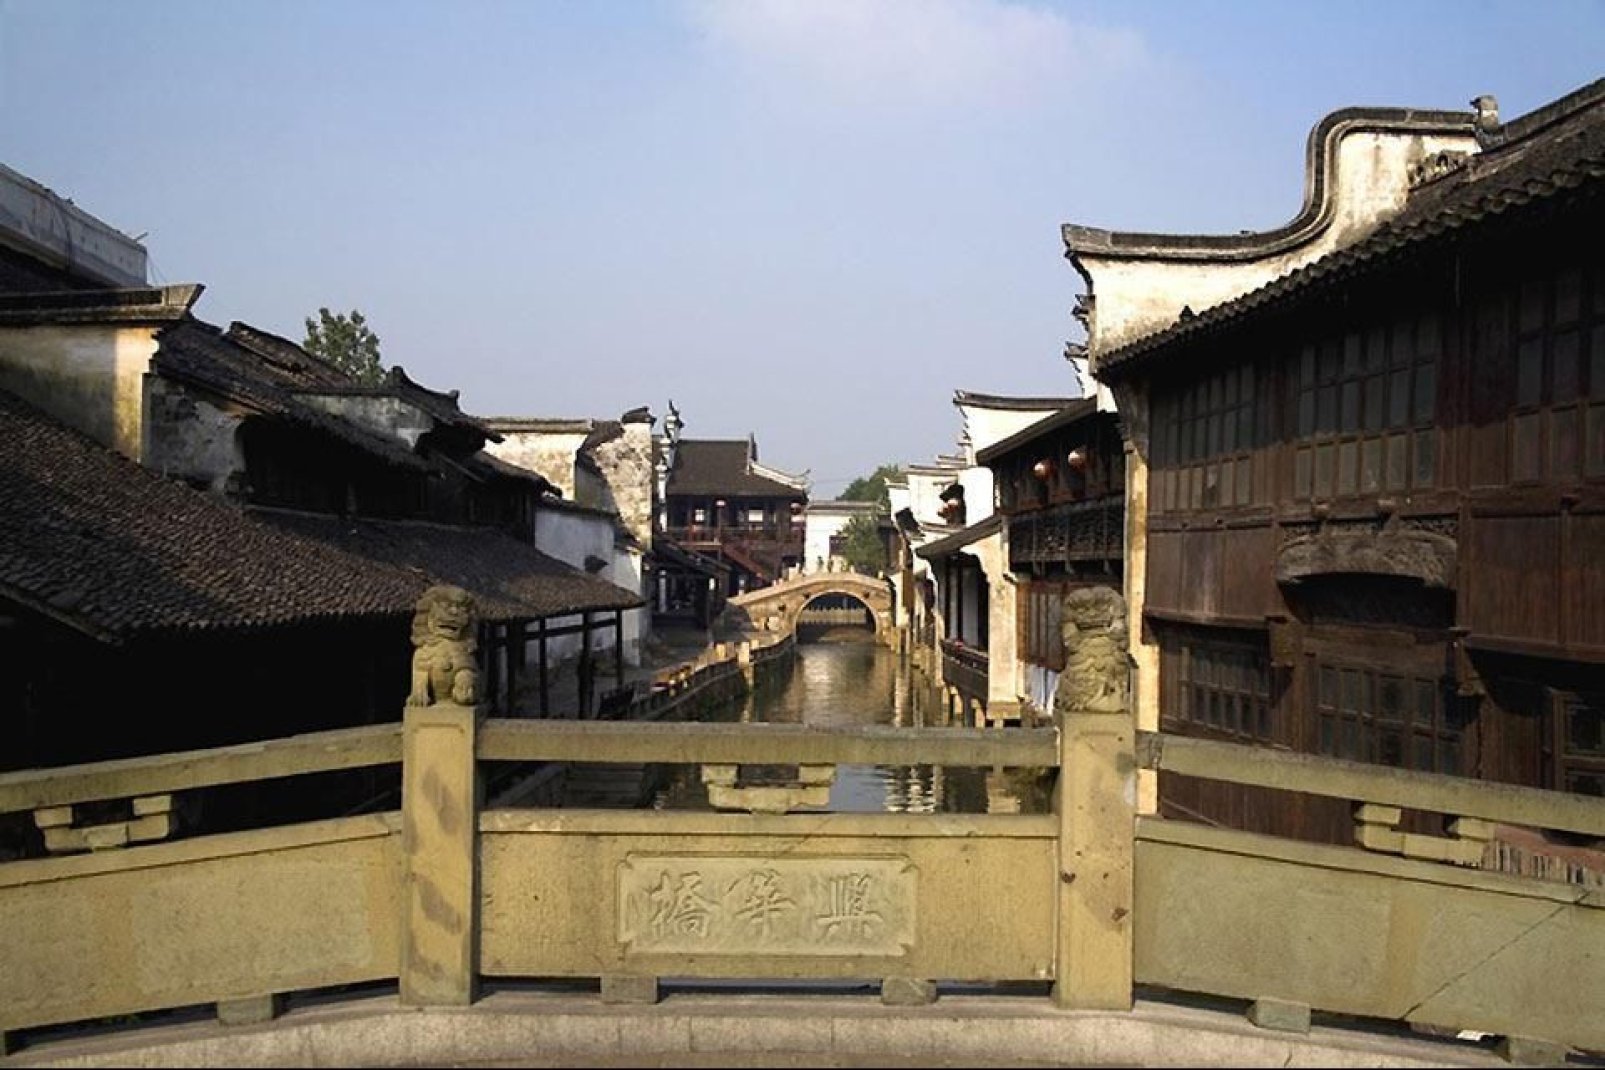 La ville de Suzhou, ancienne capitale du règne Wu, est renommée pour ses jardins et ses constructions sur l'eau.